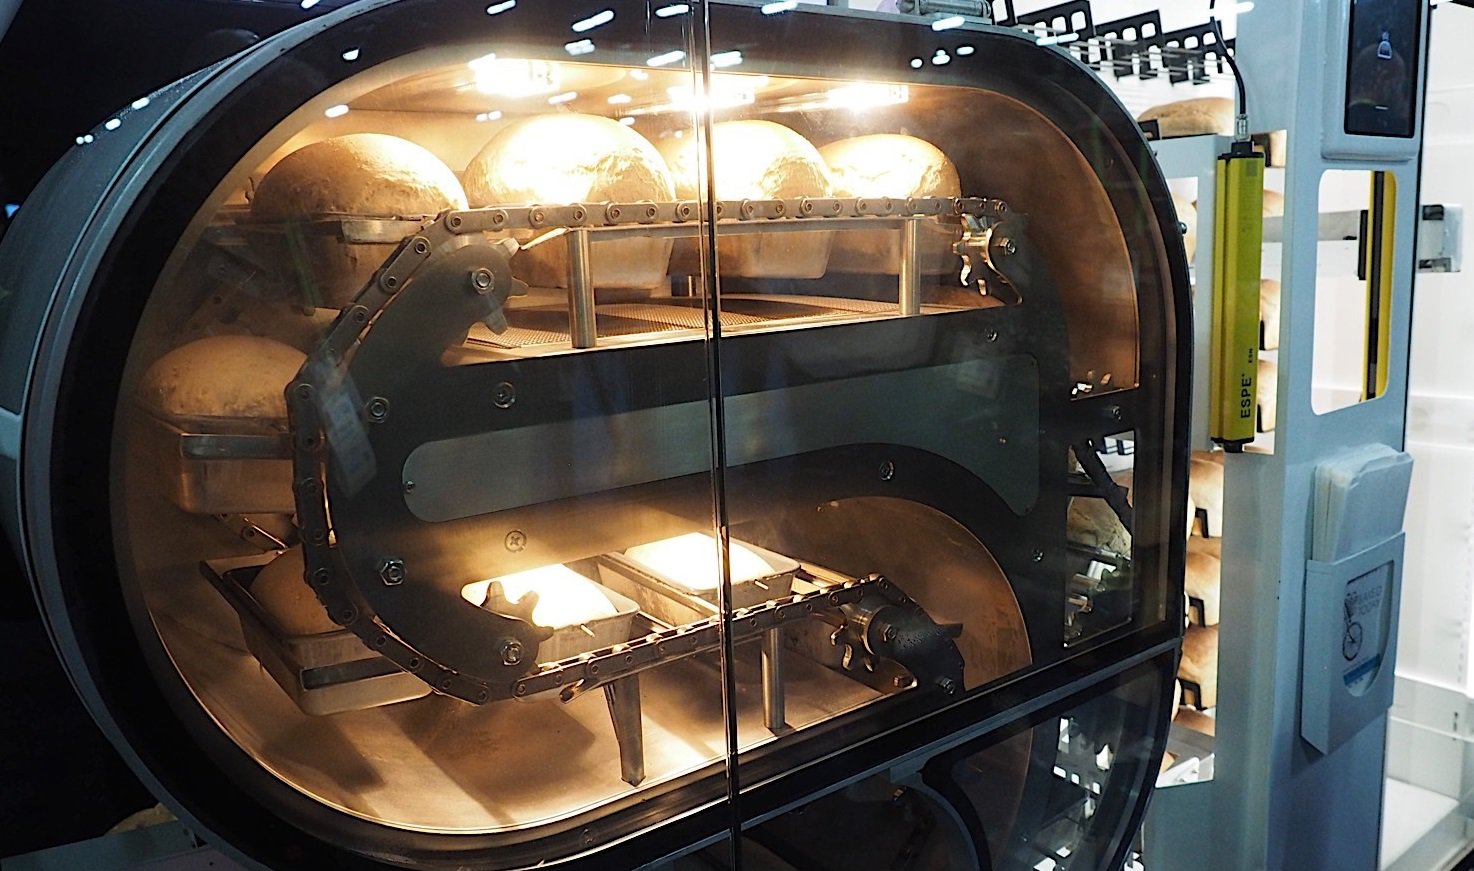 #CES | На выставке электроники показали уникальную роботизированную пекарню